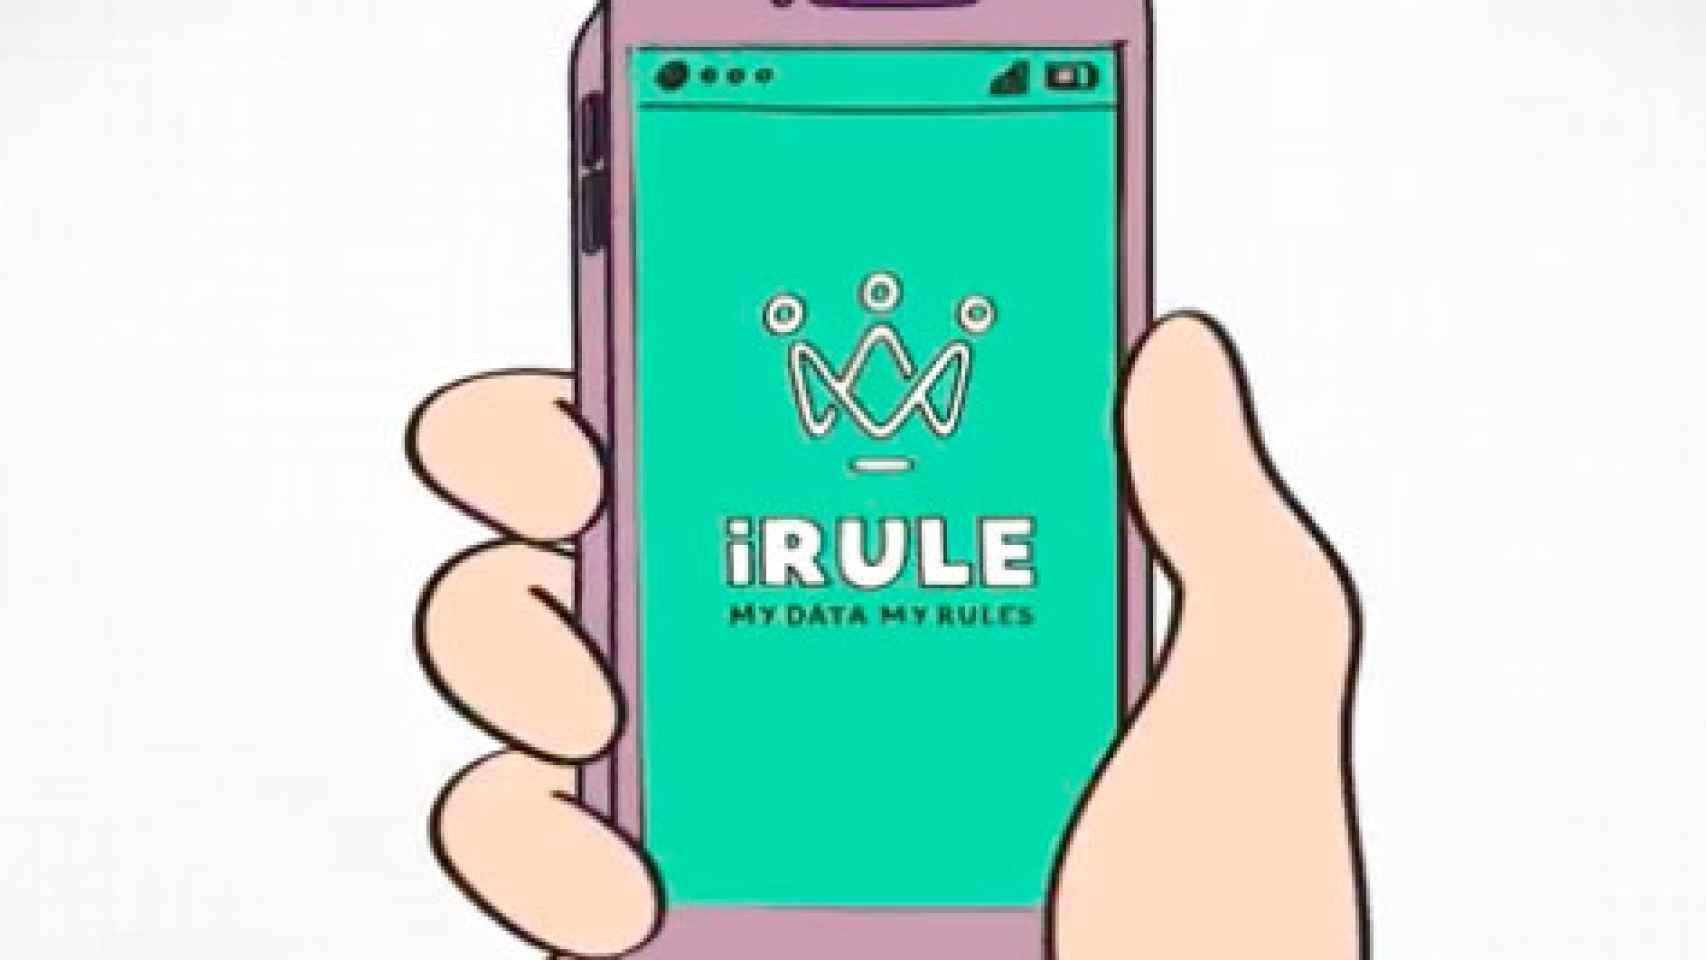 La publicidad como forma de negocio para iRule